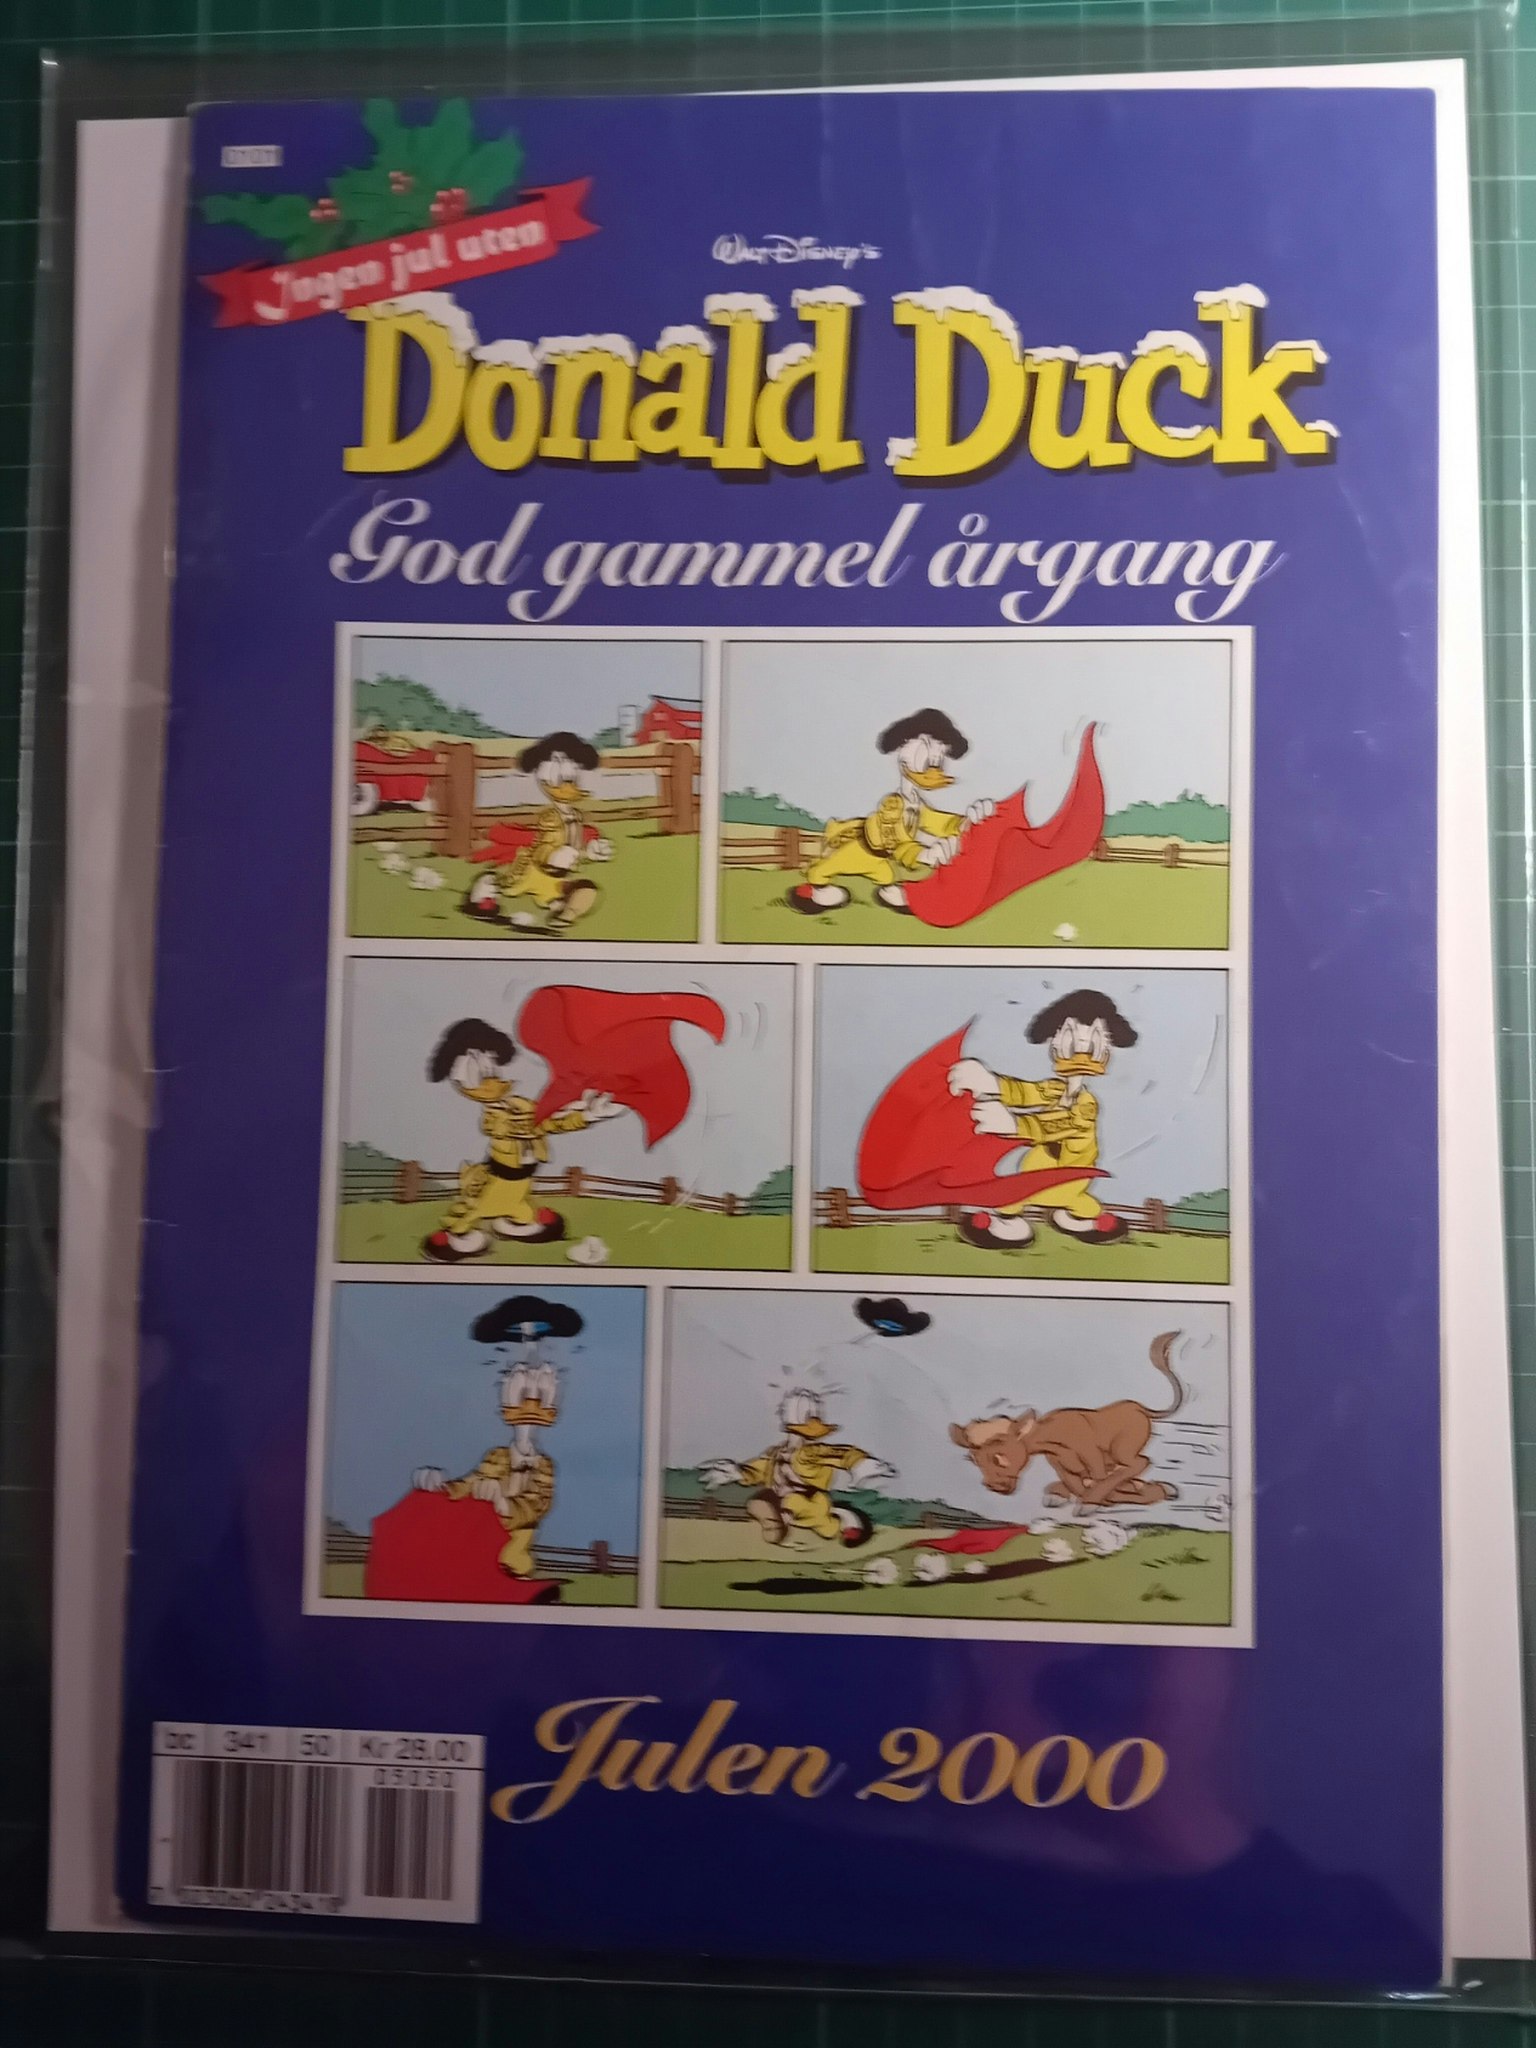 Donald Duck God gammel årgang 2000 m/plastlomme og bakark